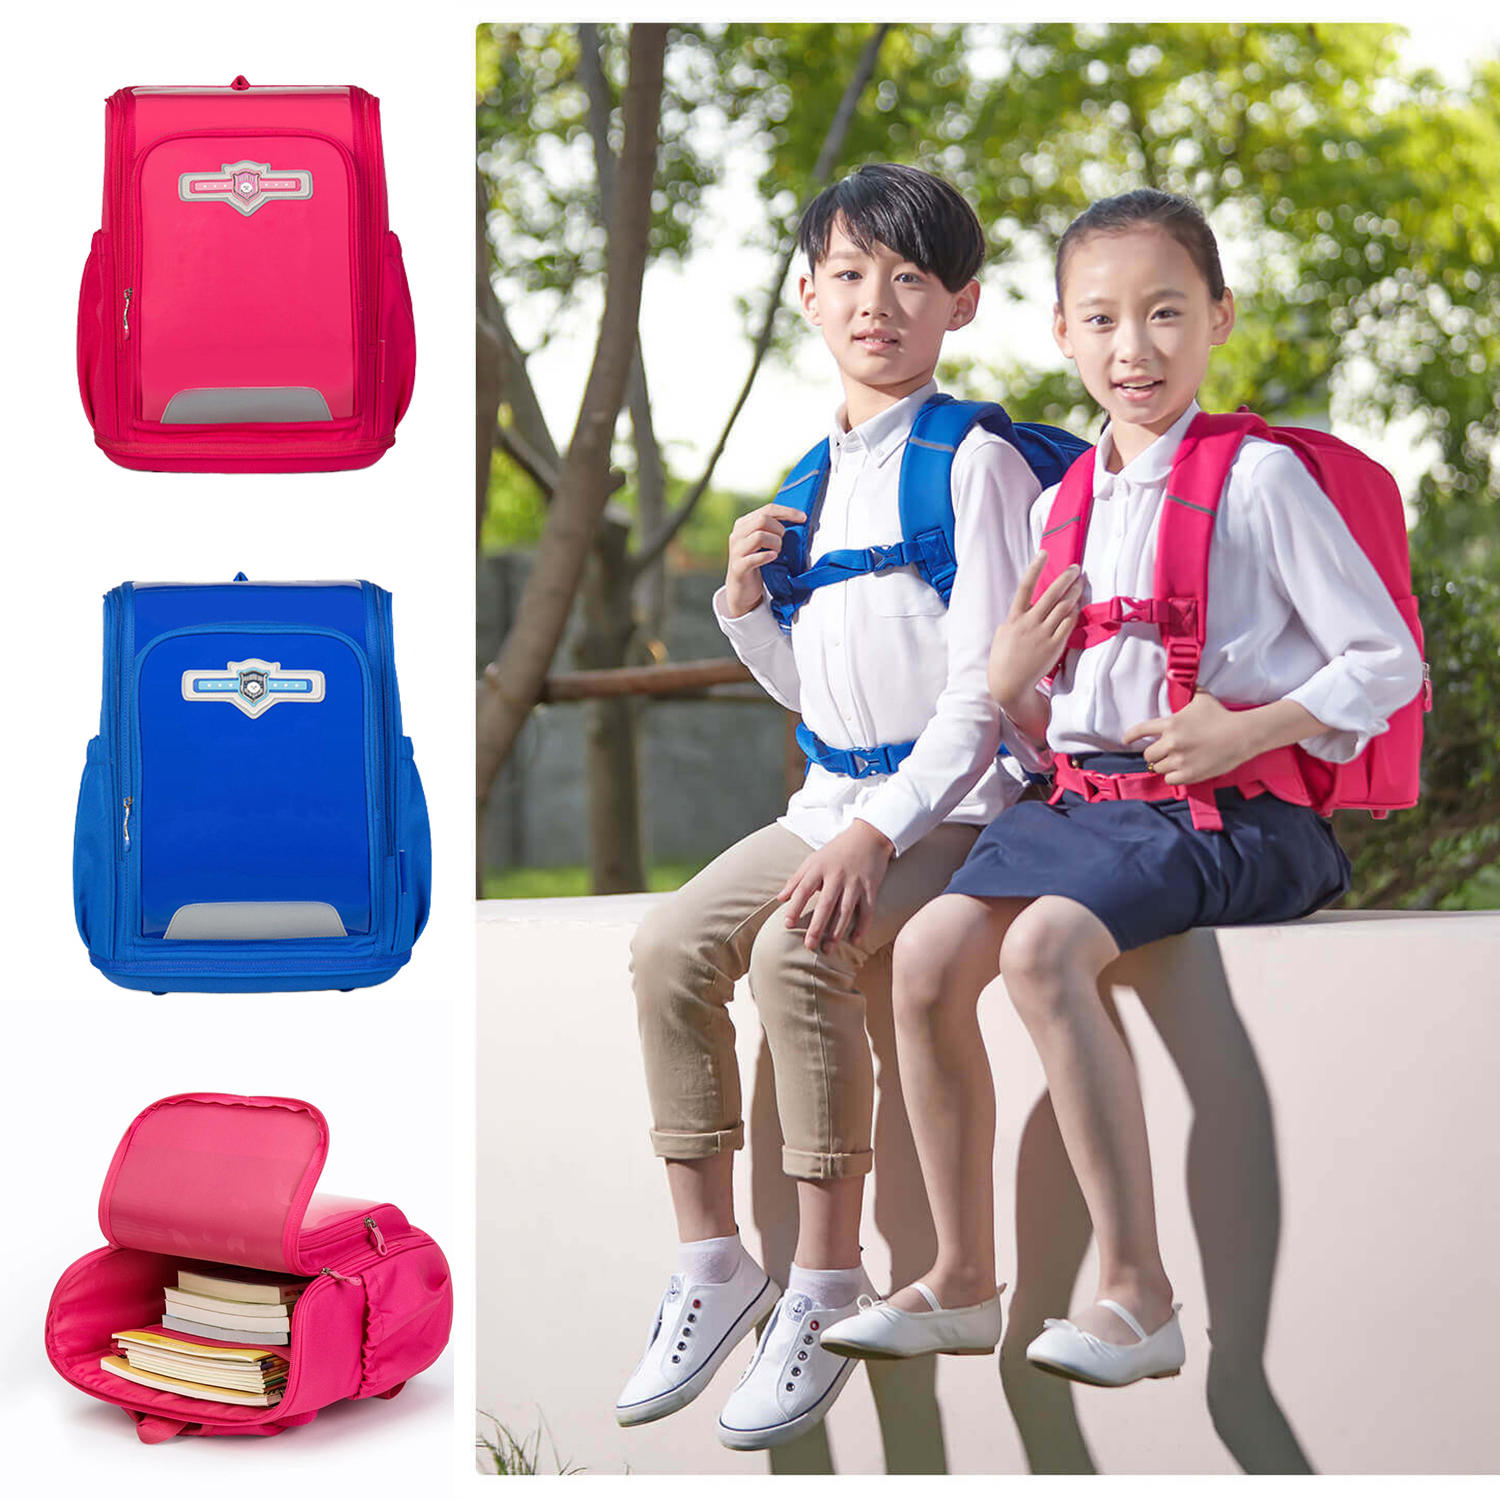 Рюкзак Xiaoyang для детей и школьников, защищающий позвоночник и снижающий нагрузку на спину, красного цвета, для мальчиков и девочек